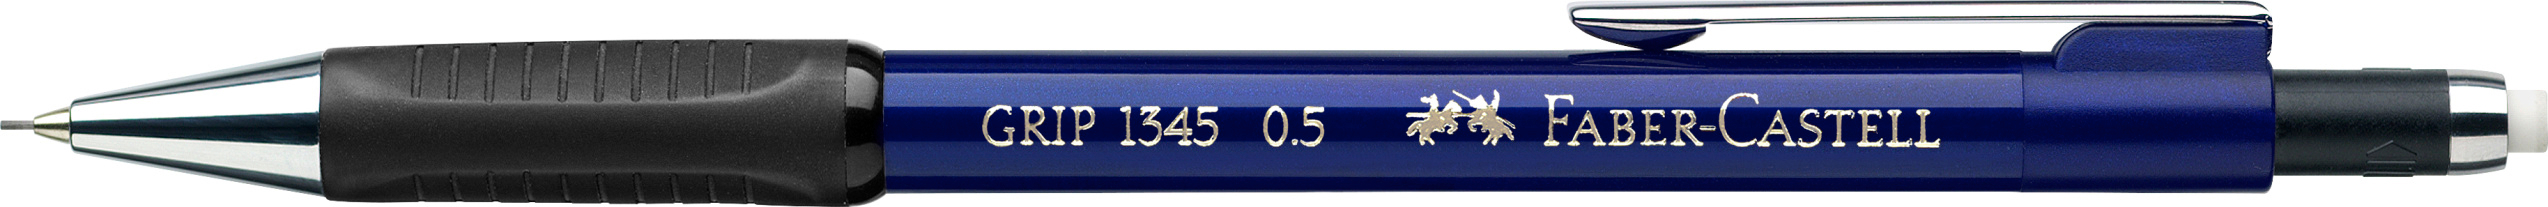 FABER-CASTELL Porte-mine GRIP 1345 134551 bleu, avec gomme 0.5mm